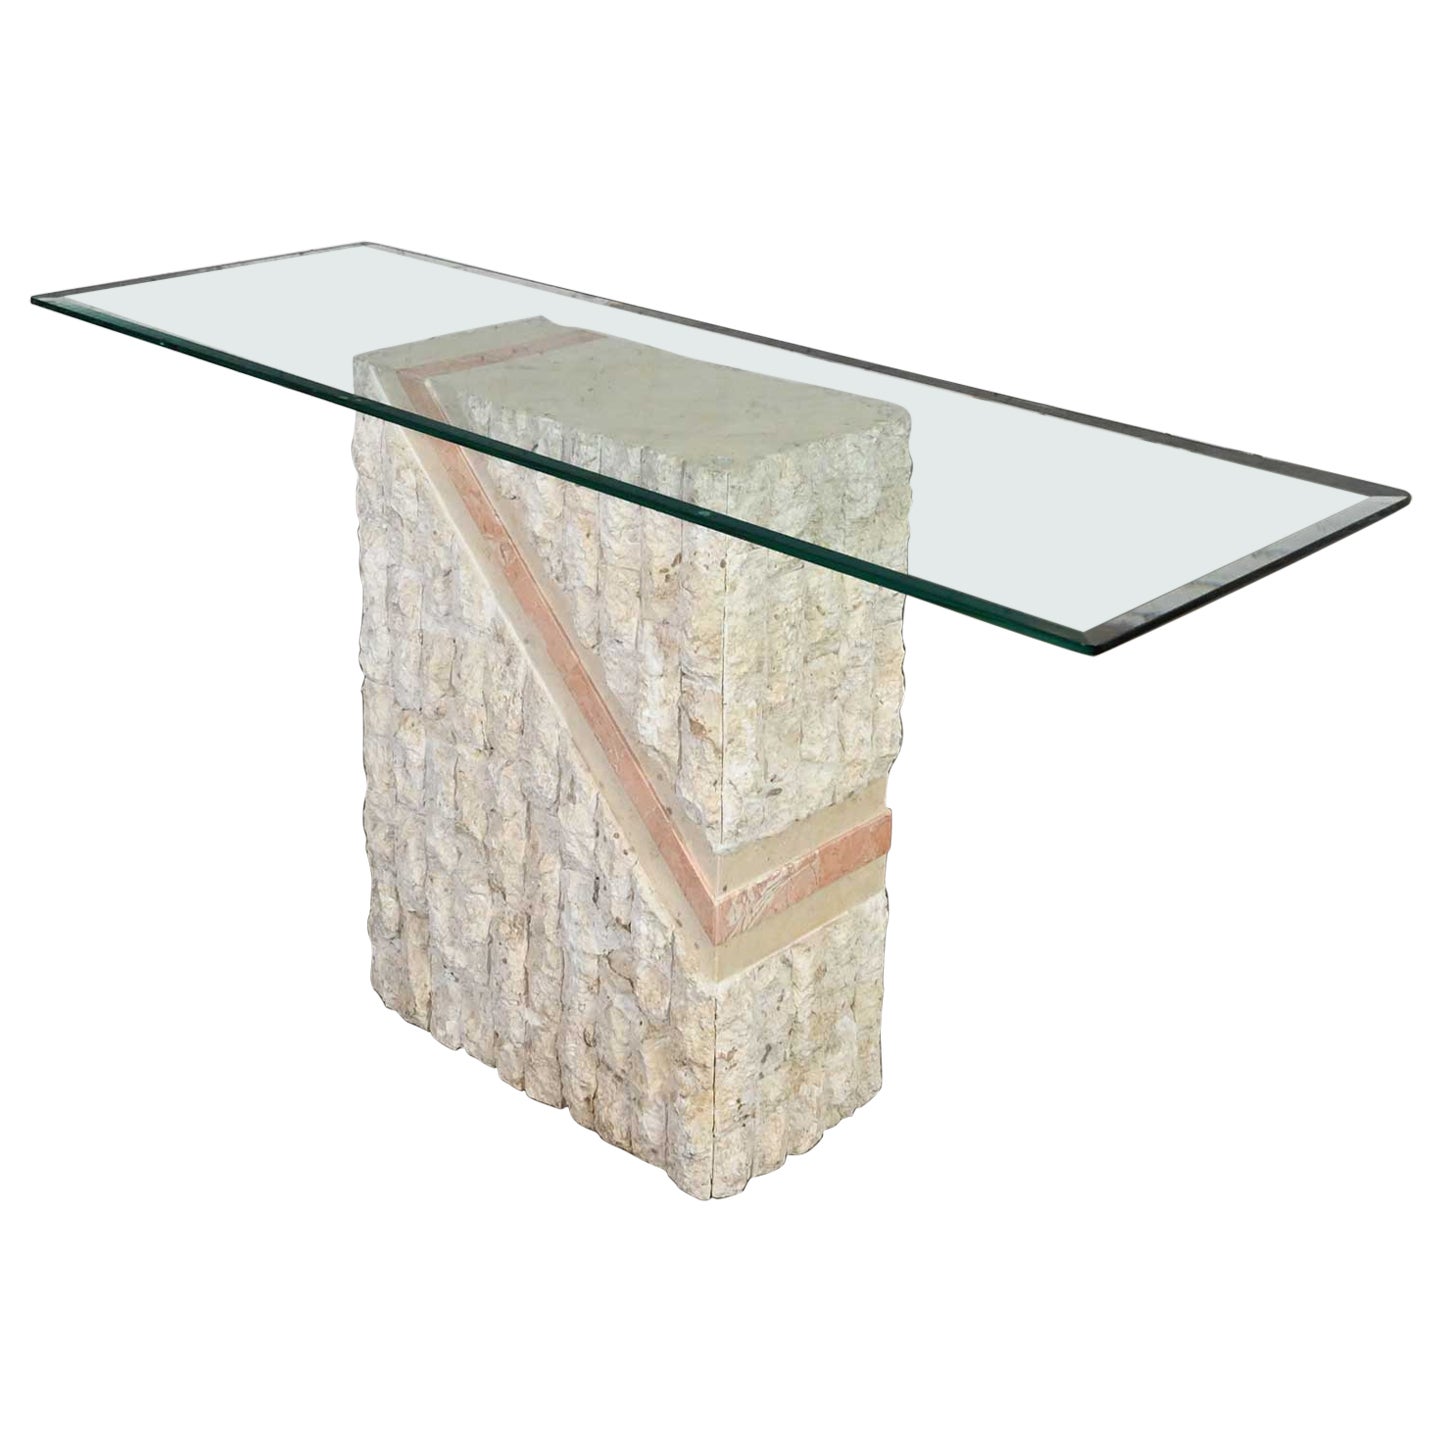 Modernes Mosaik Mactan Stone Sofa Tisch Pfirsich Streifen Stil Maitland Smith